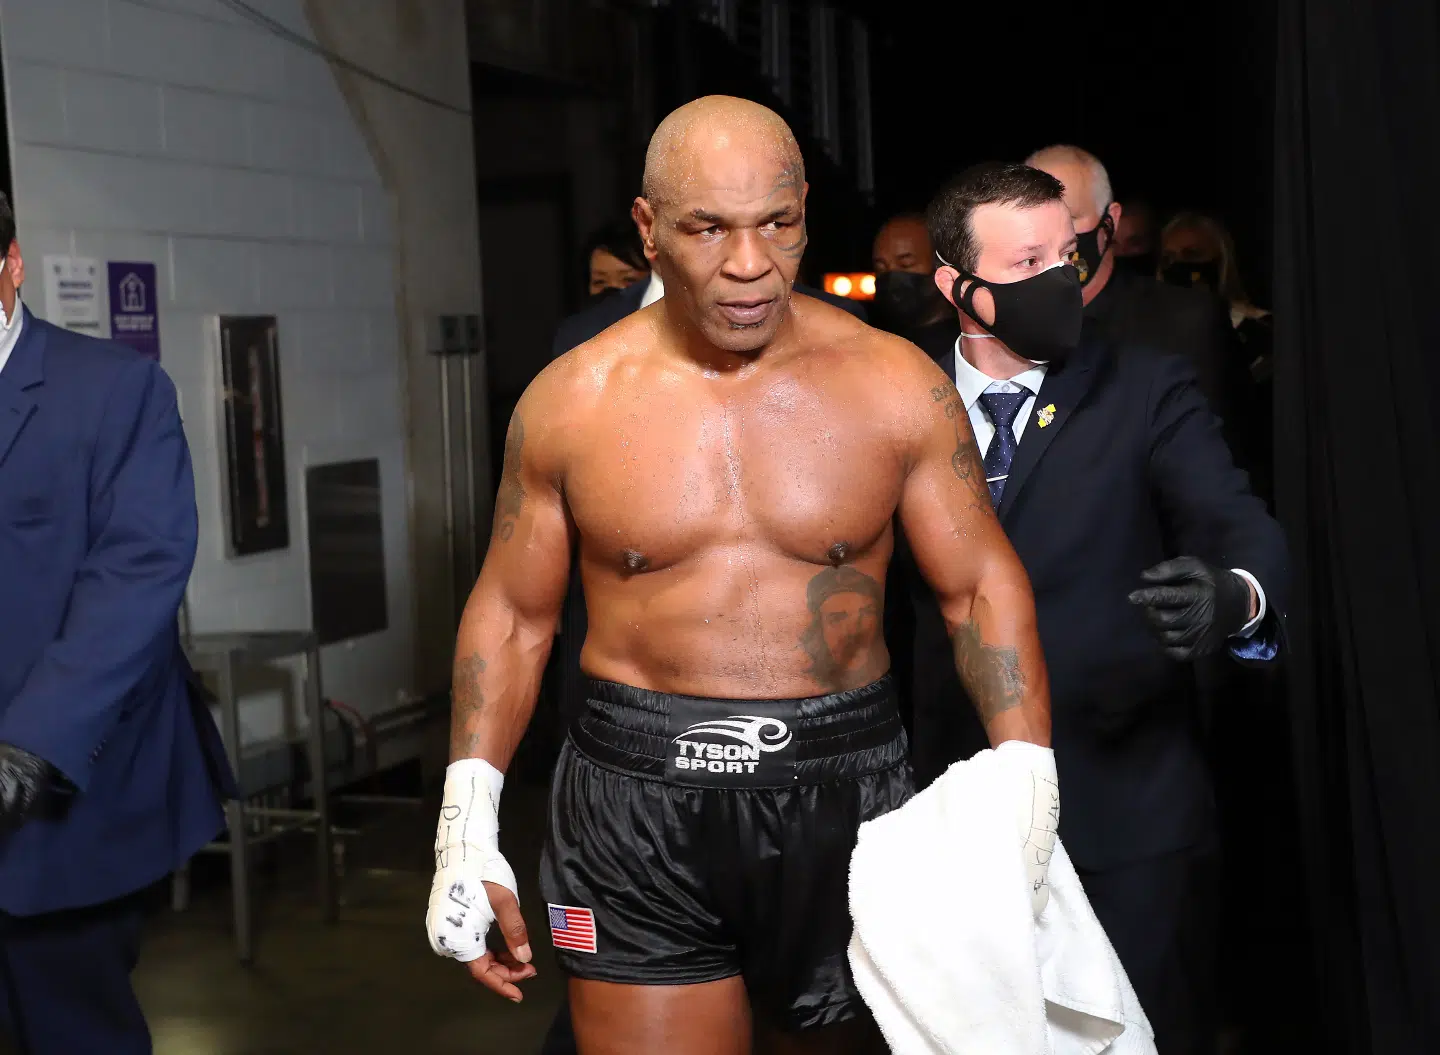 Entraîneur de Mike Tyson révèle : « Il est une bête, il a ruiné mon épaule » - Découvrez les séances d'entraînement intenses du champion !